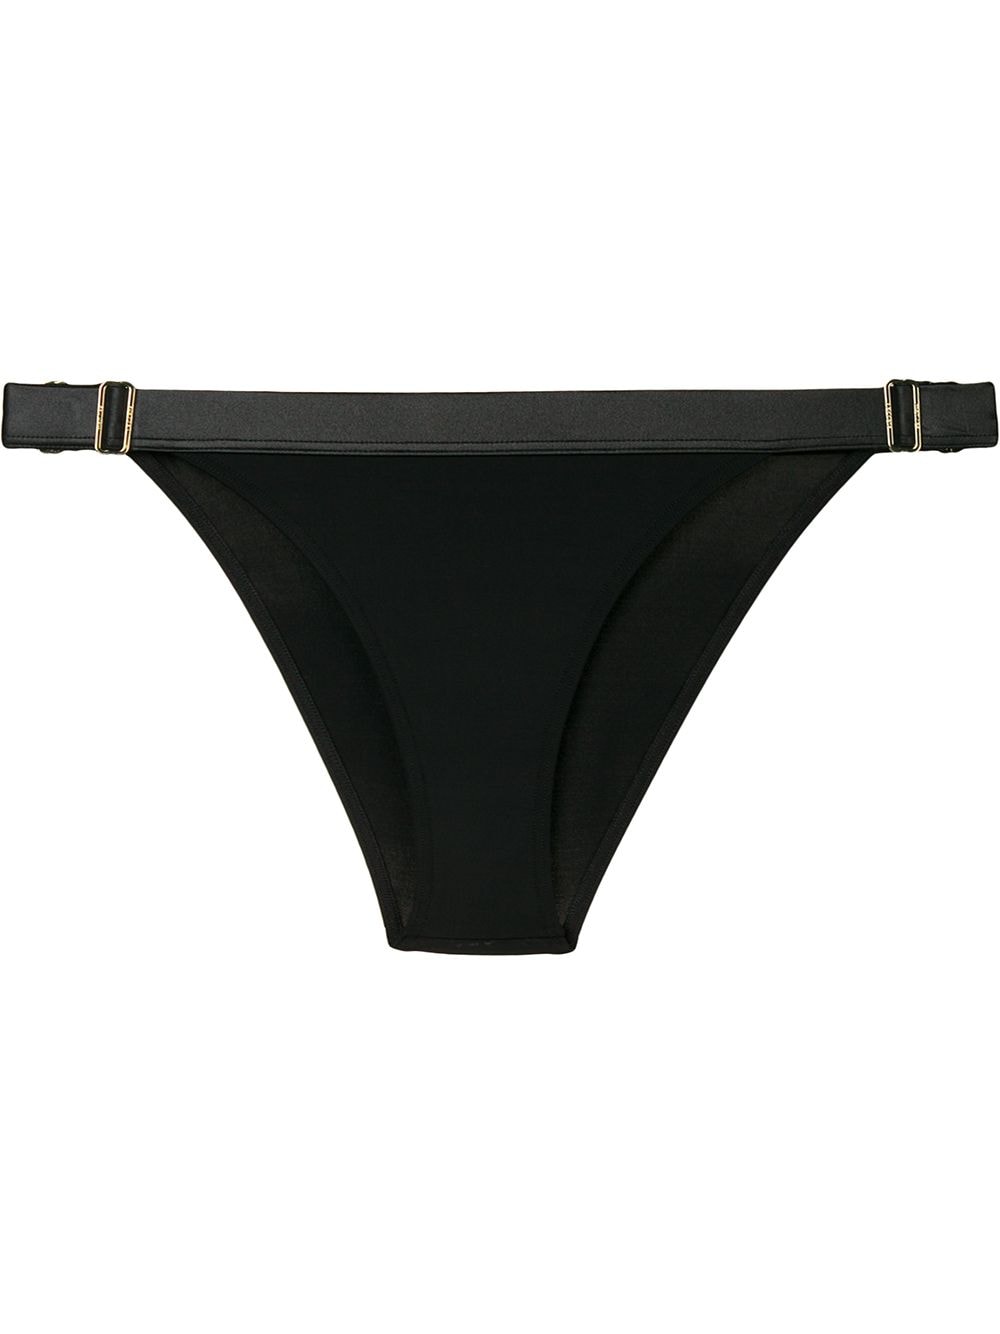 Marlies Dekkers Cache Coeur tanga bikini briefs - Black von Marlies Dekkers